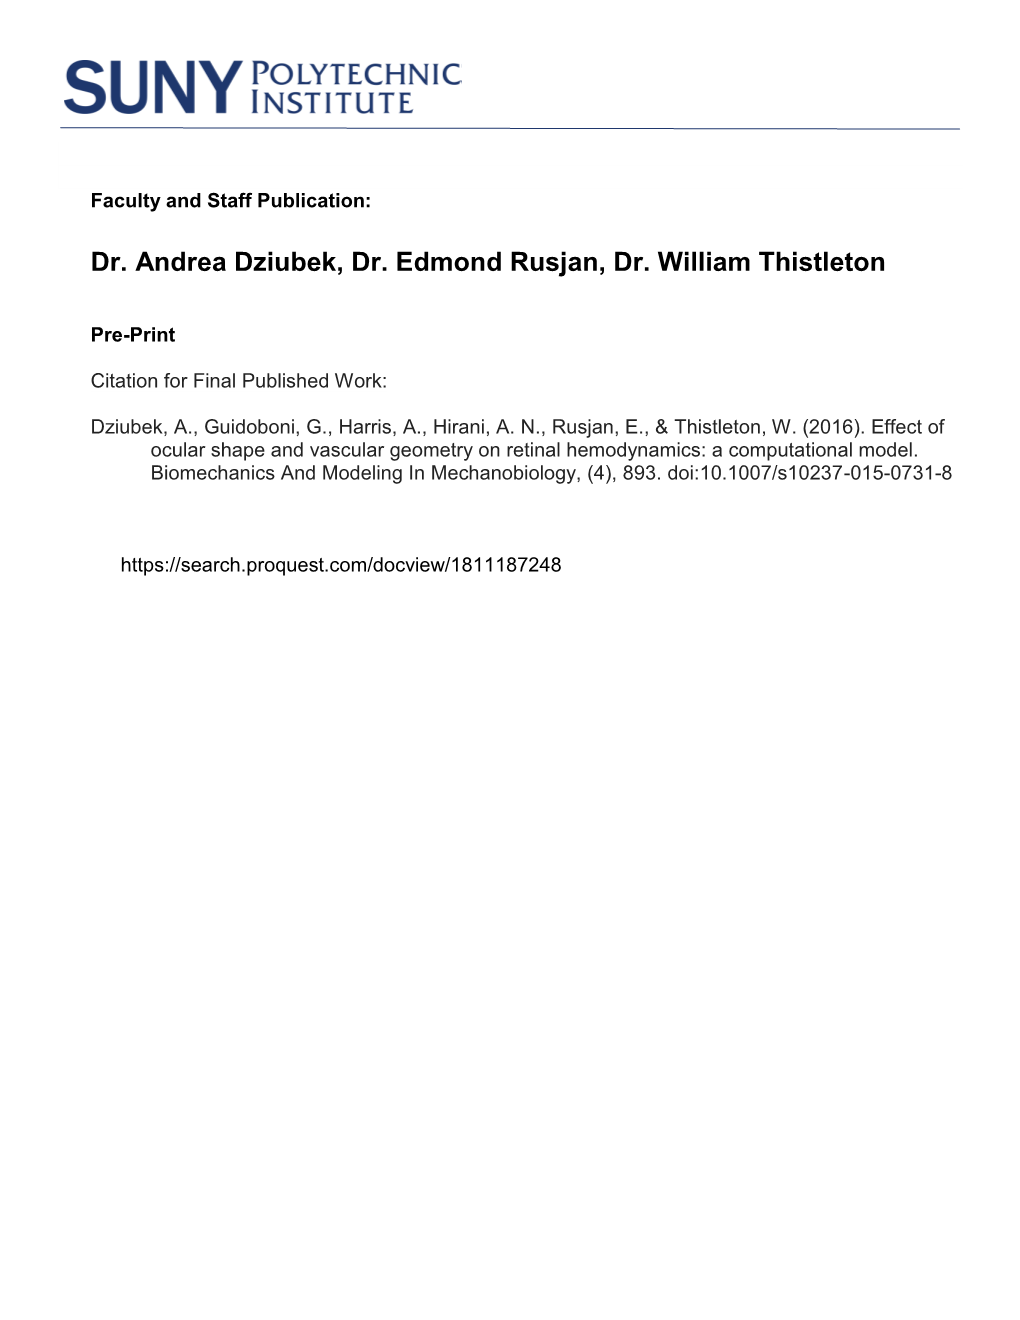 Dr. Andrea Dziubek, Dr. Edmond Rusjan, Dr. William Thistleton